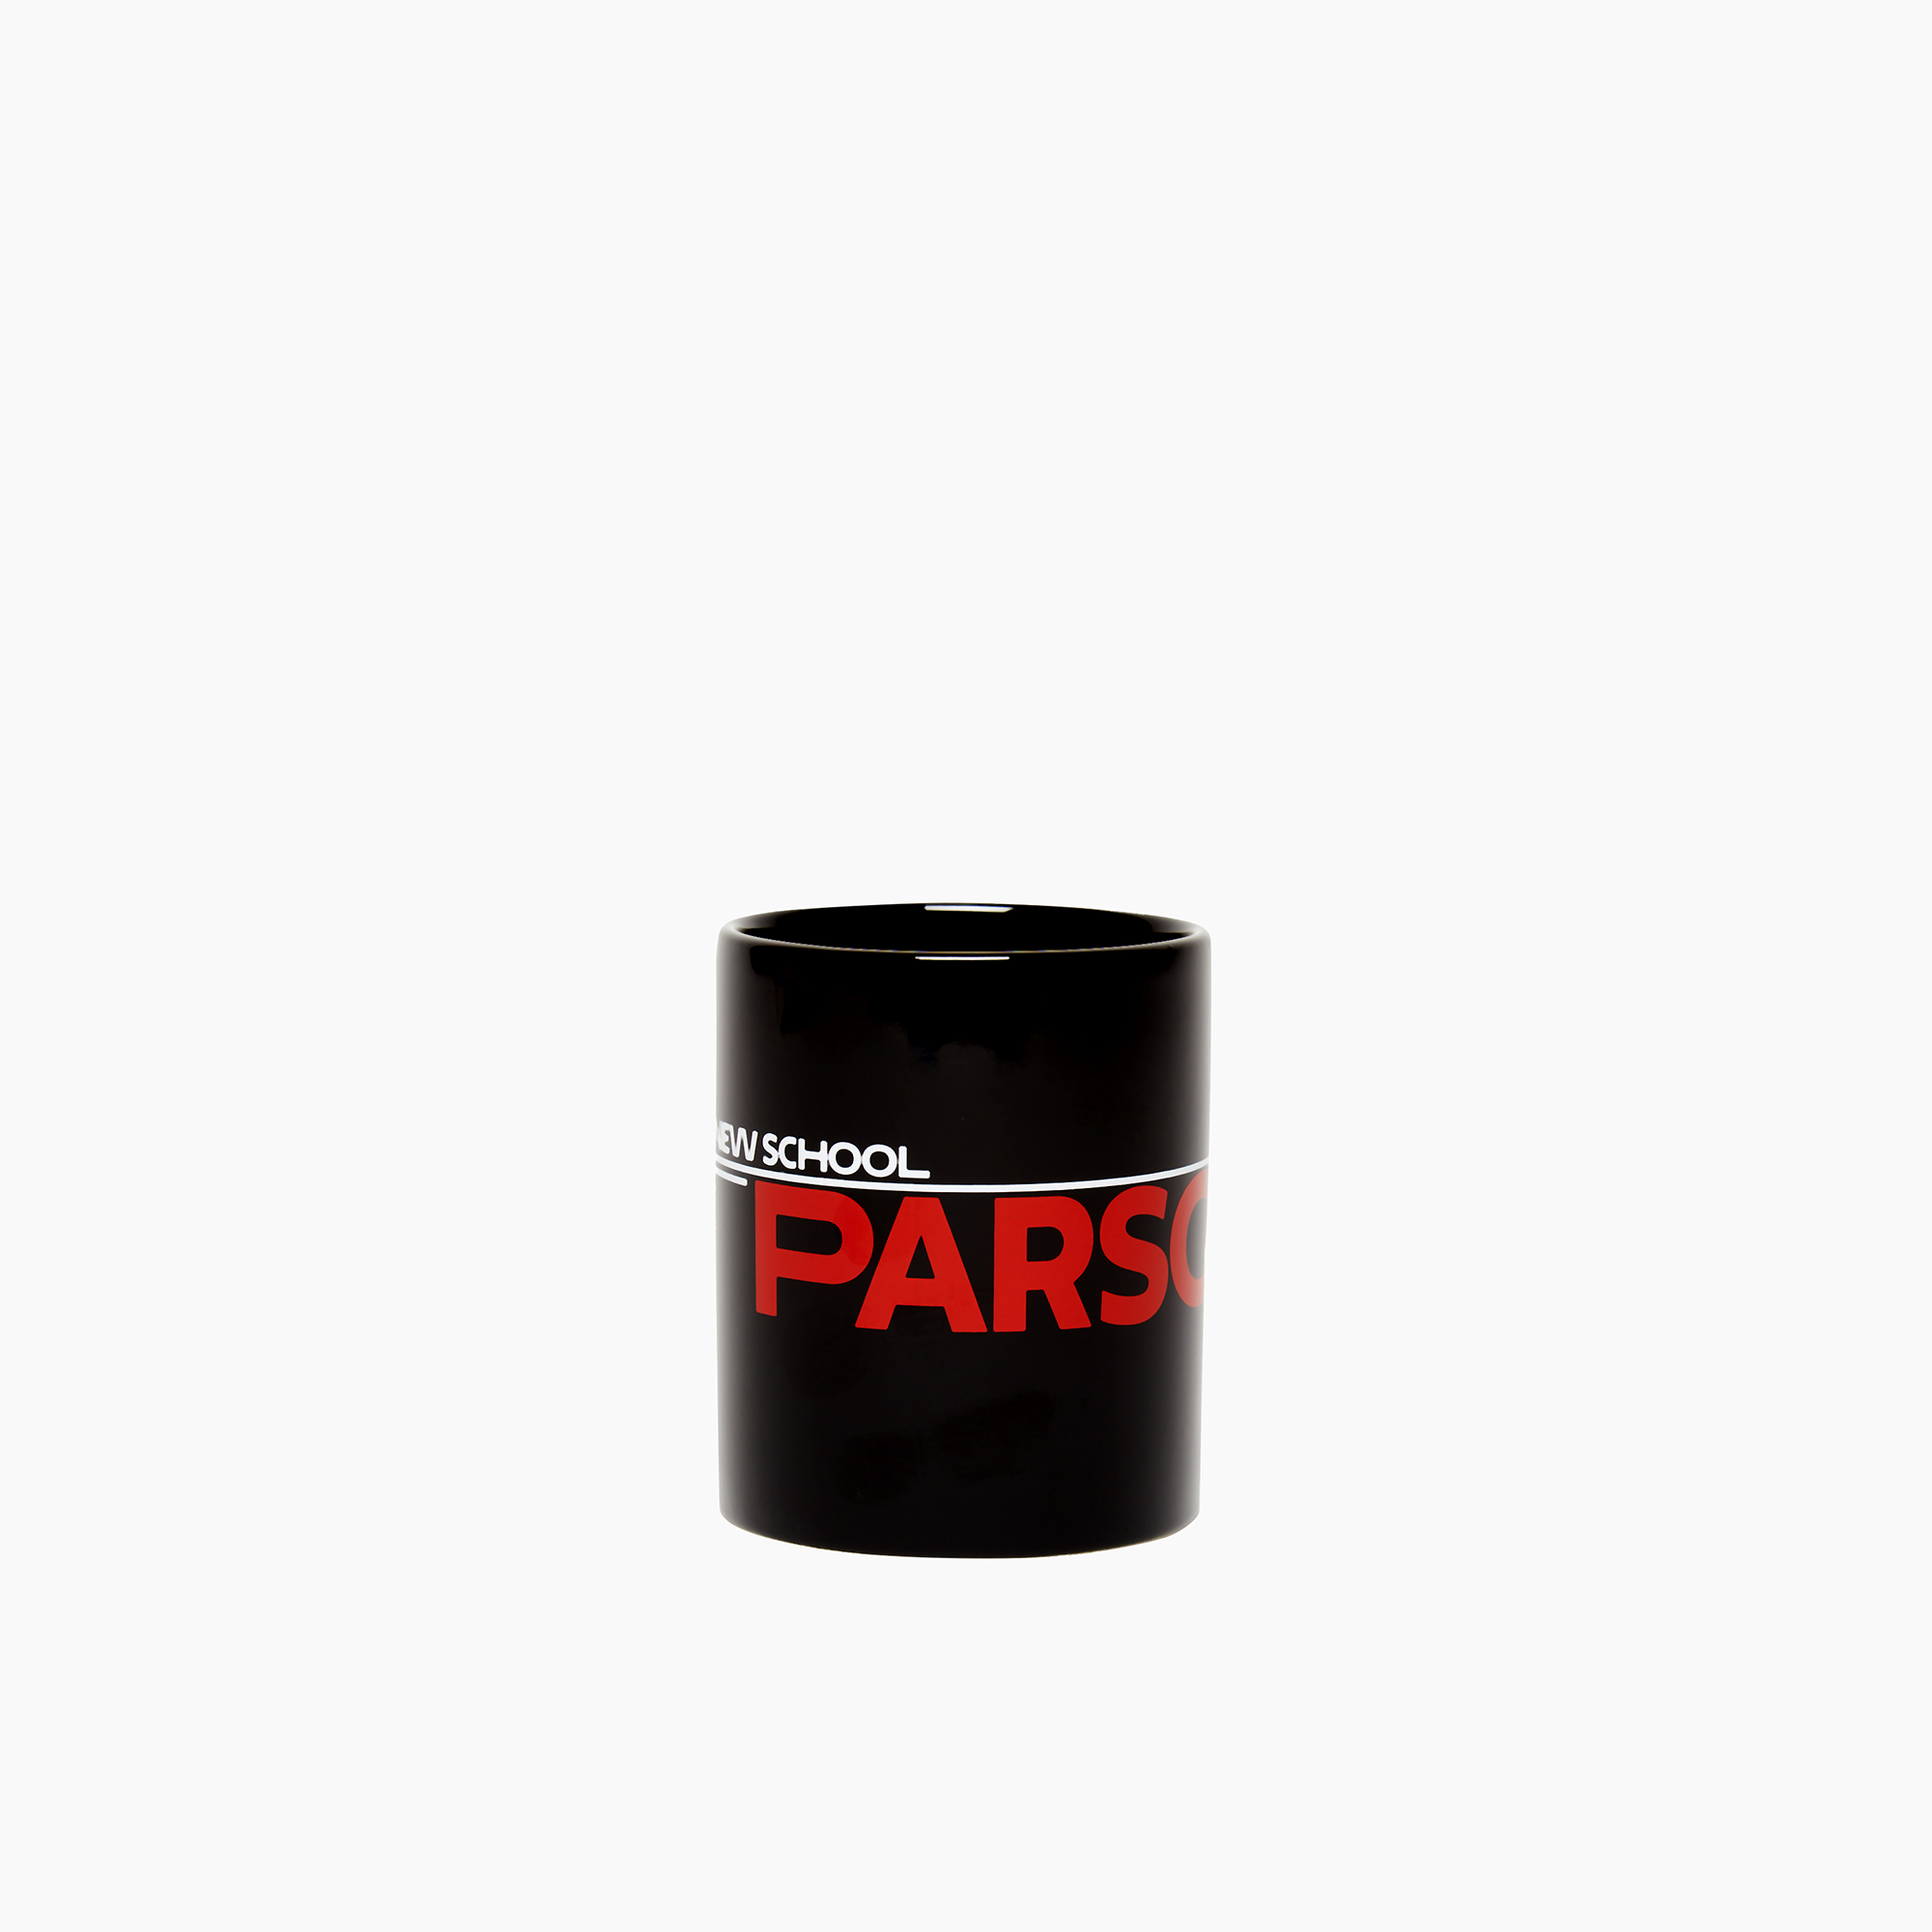 Parsons Mug